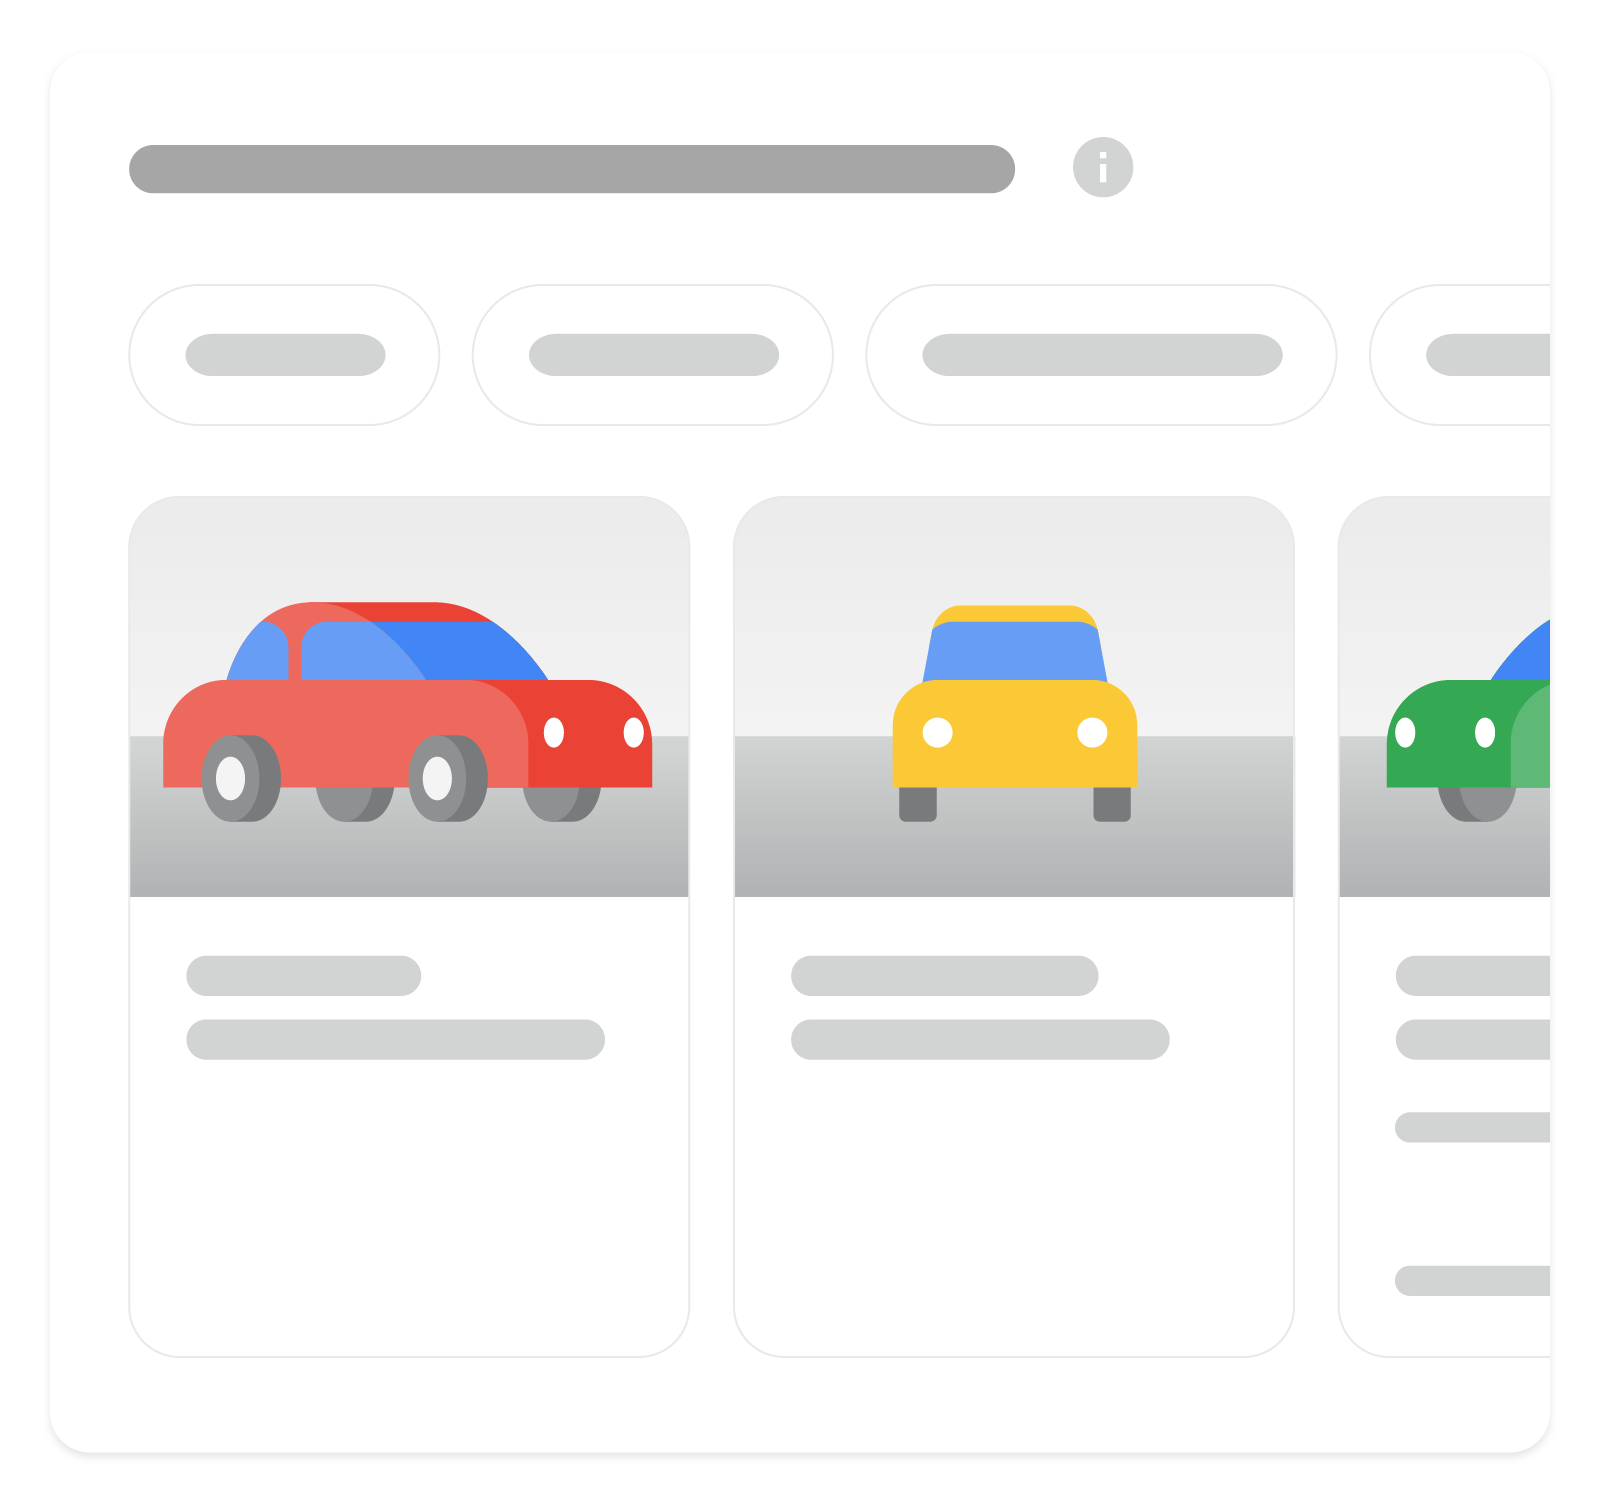 차량 등록정보 리치 결과가 Google 검색에 표시되는 방식을 보여주는 이미지